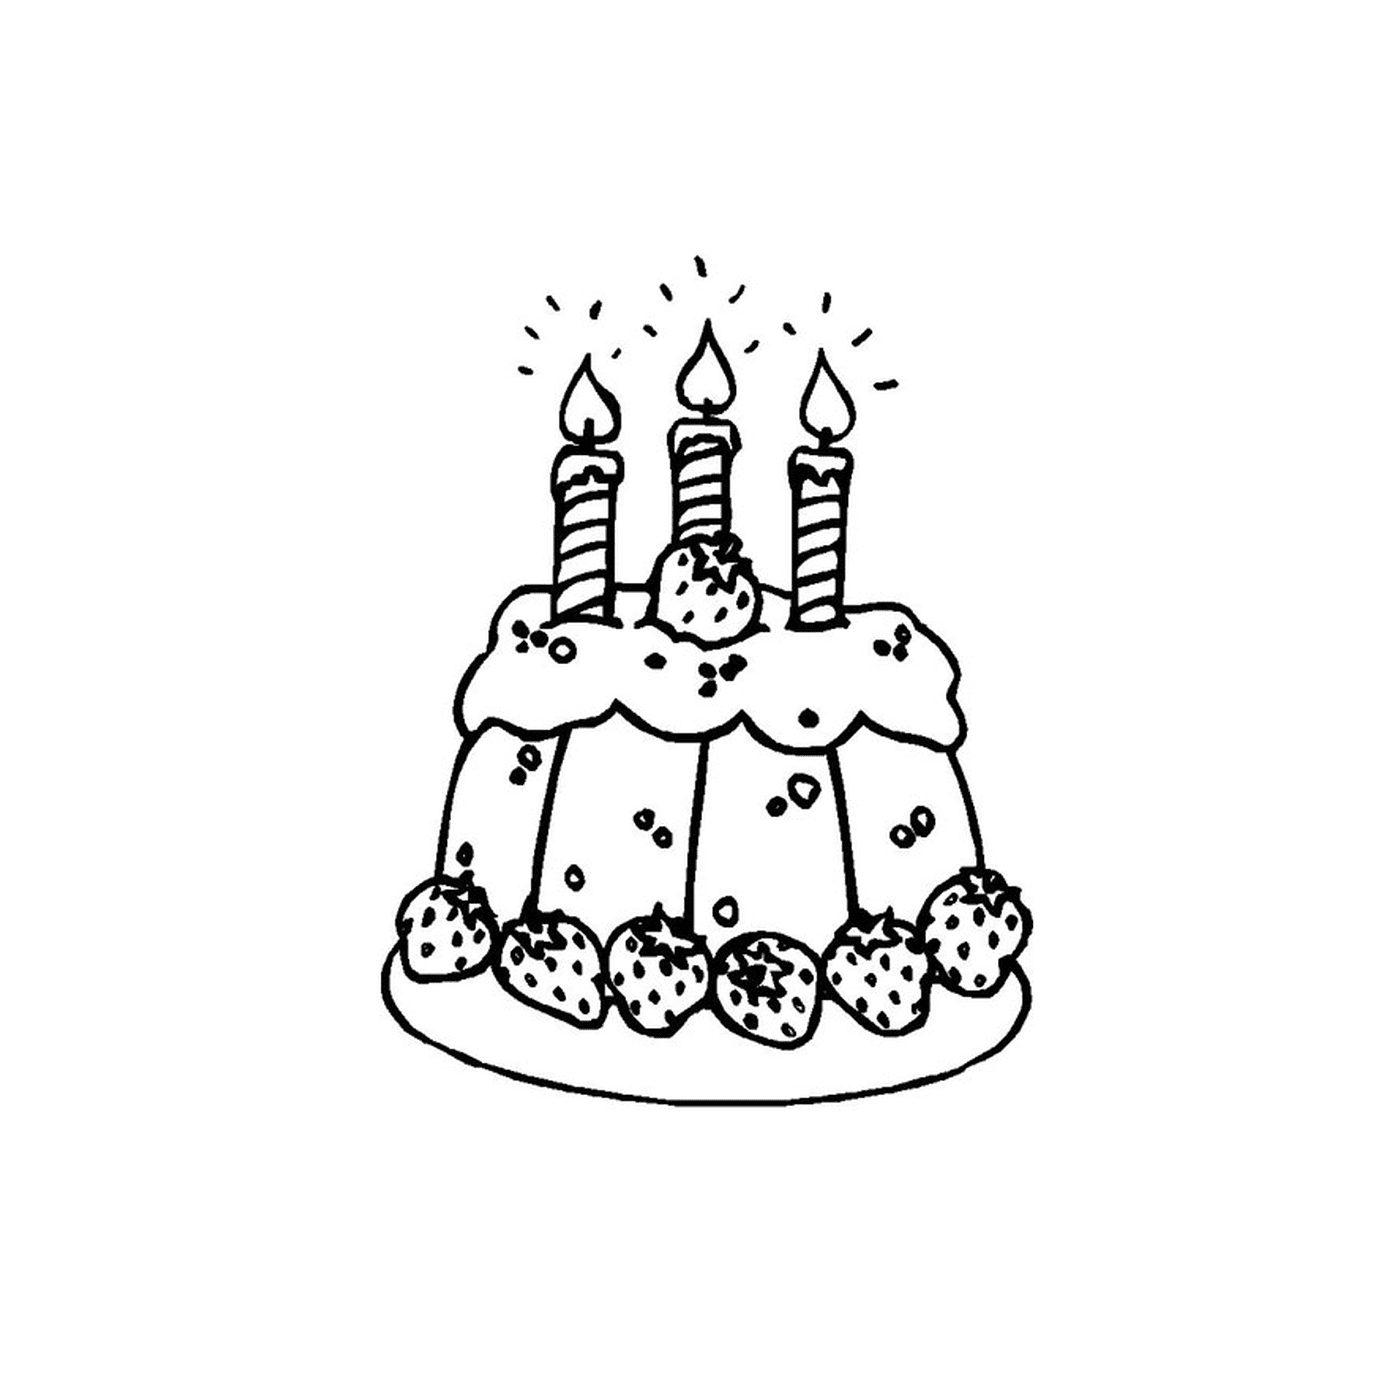  ein Kuchen mit drei Kerzen beleuchtet 